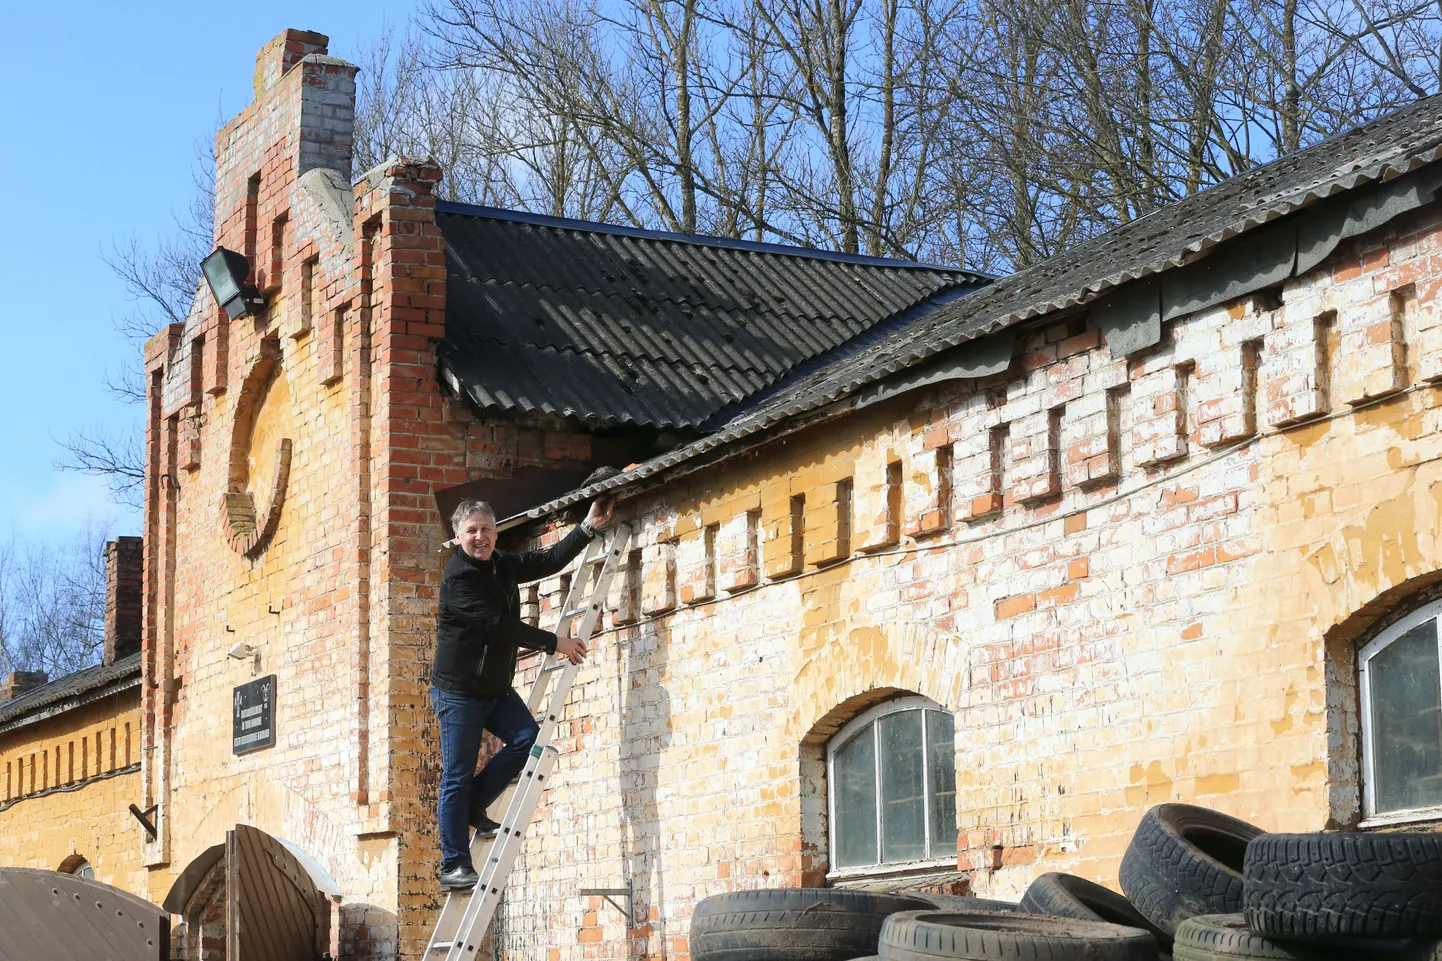 Möödunud aastal sai Tartu kaasava eelarve hääletusel kõige rohkem hääli Tartu ratsakooli ajaloolise tallihoone katusekatte rekonstrueerimine.